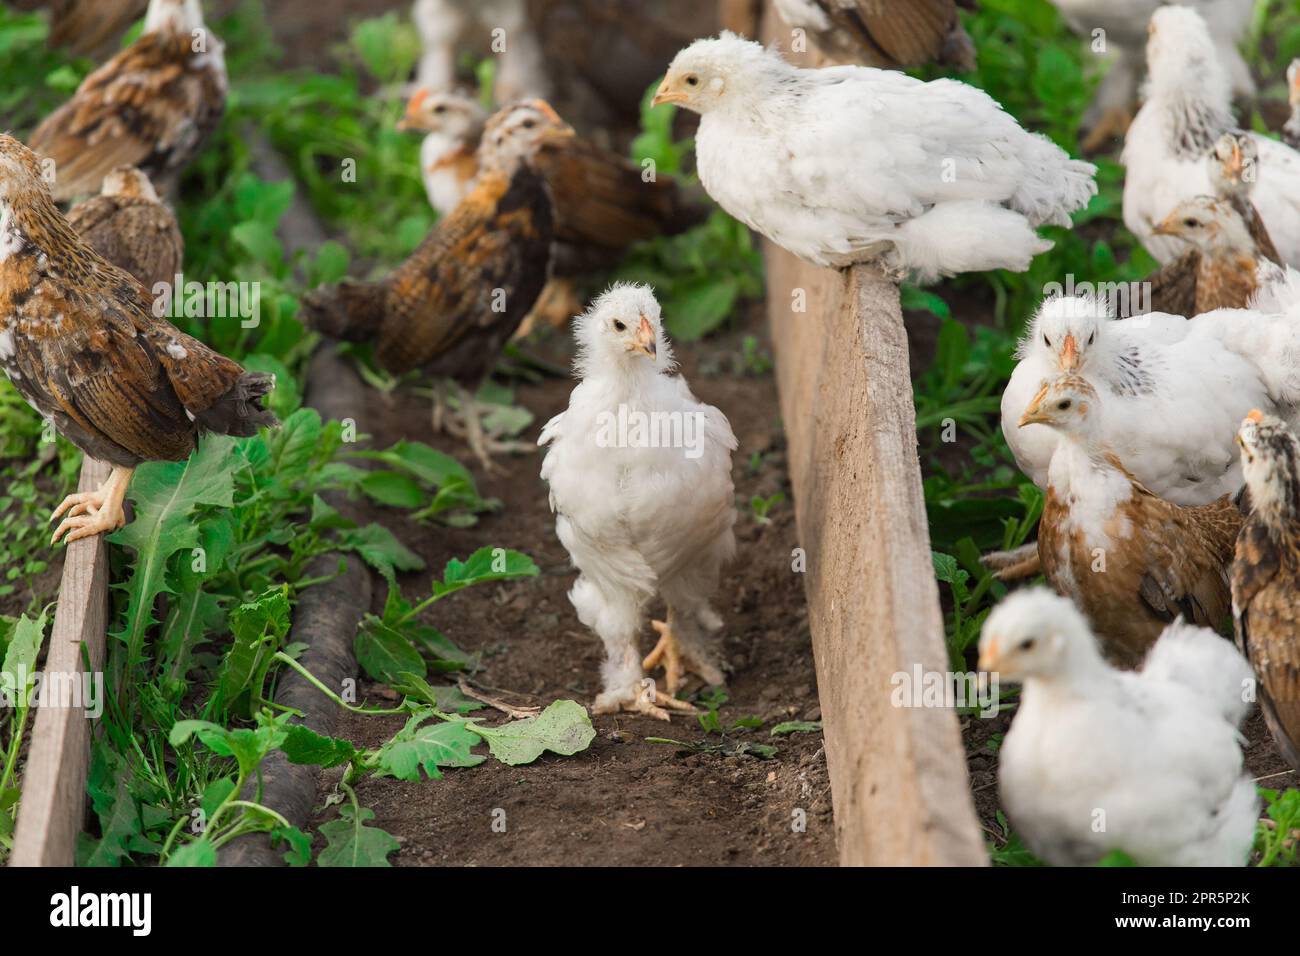 Raggruppa molti polli bianchi e scuri brama colombiani sullo sfondo di foglie verdi, primo piano. Foto Stock